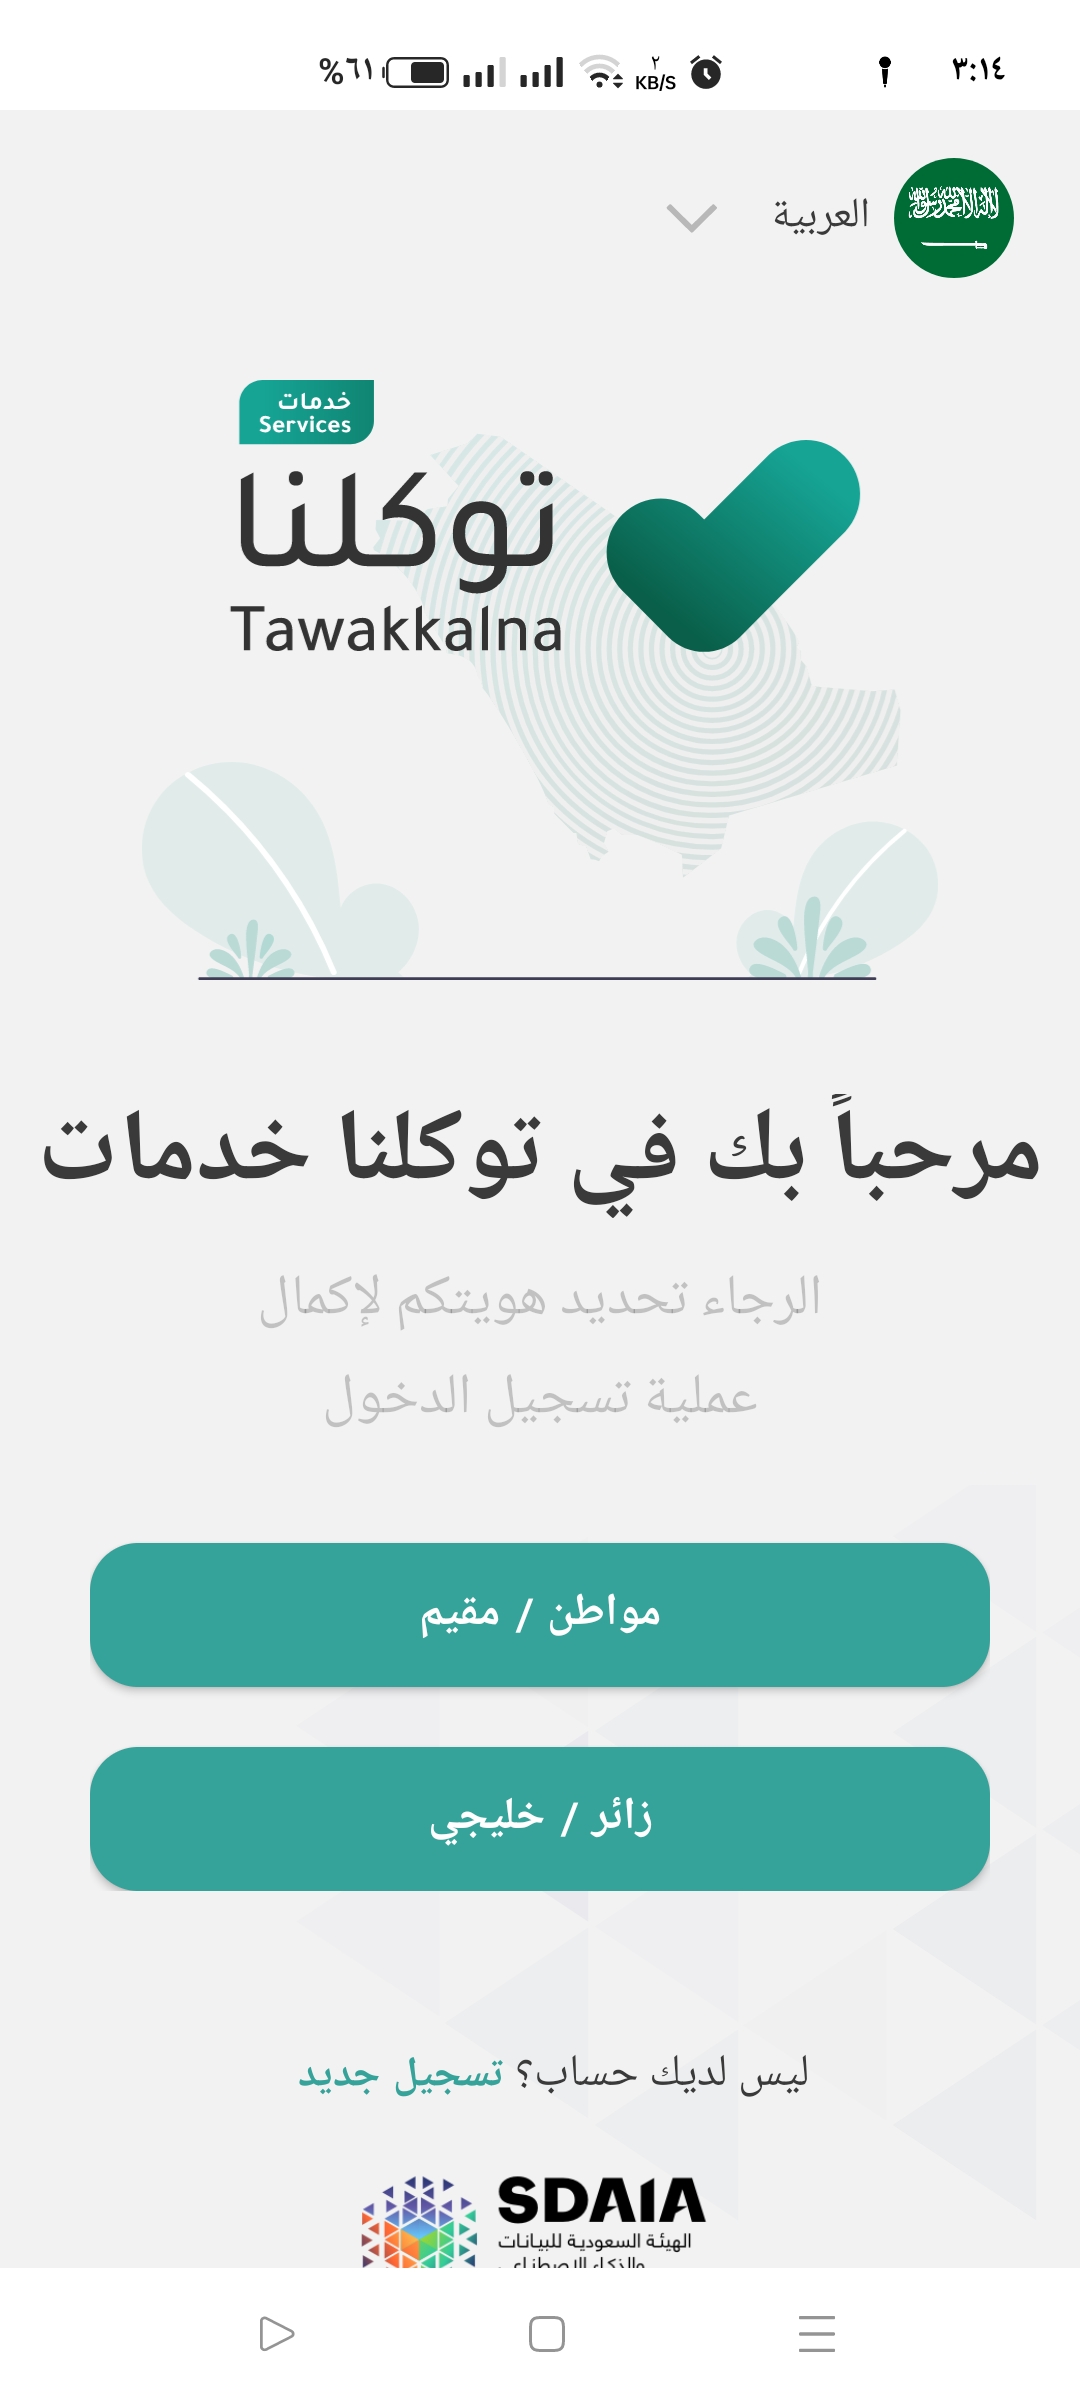 تطبيق توكلنا خدمات بالمملكة العربية السعودية للمواطن والمقيم والزائر رفيقك الرقمي 2022